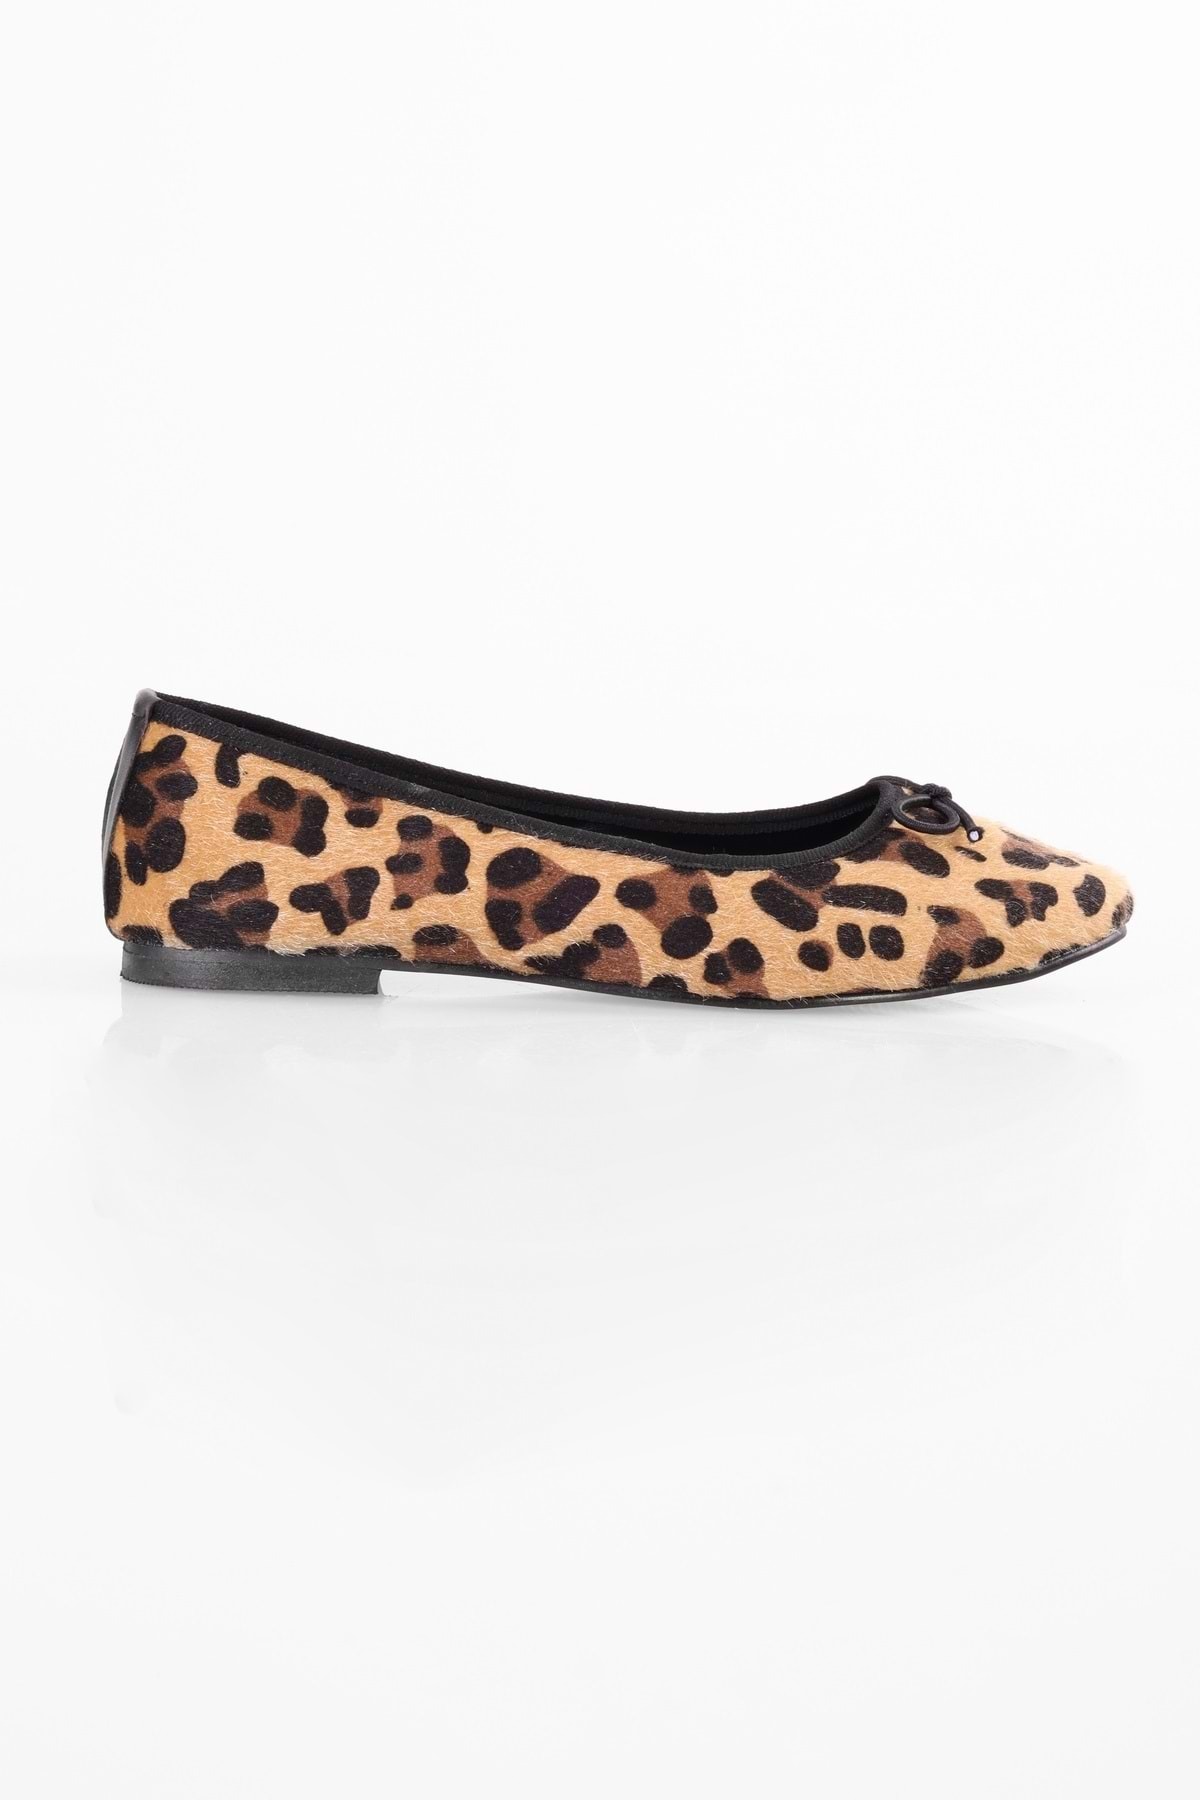 Levně Shoeberry Women's Baily Leopard Patterned Bow Daily Flats